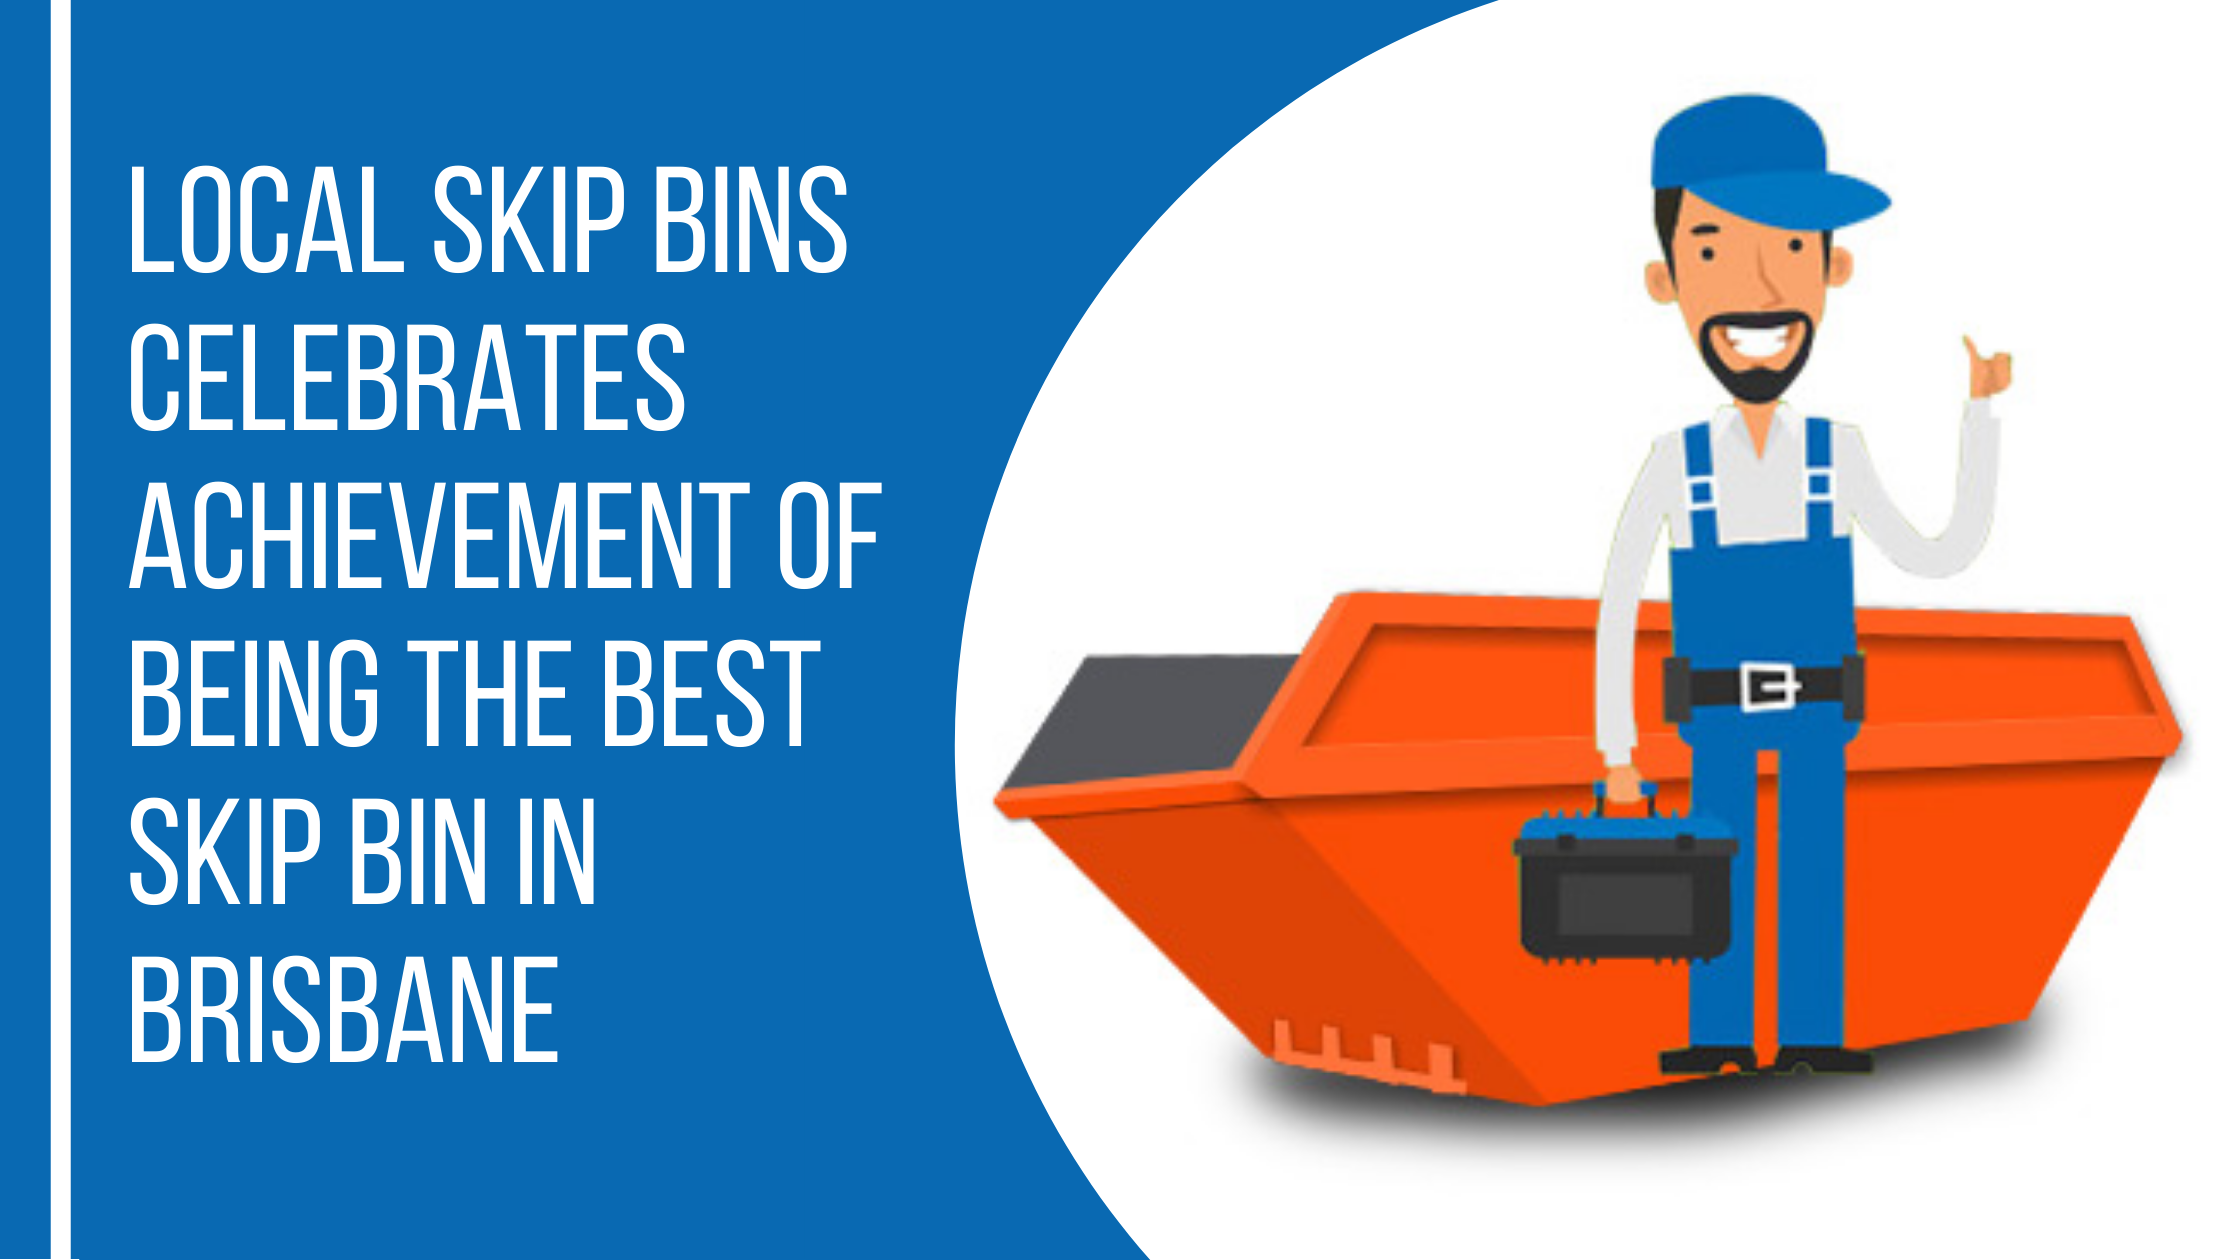 Hire the best skip bins Brisbane company.